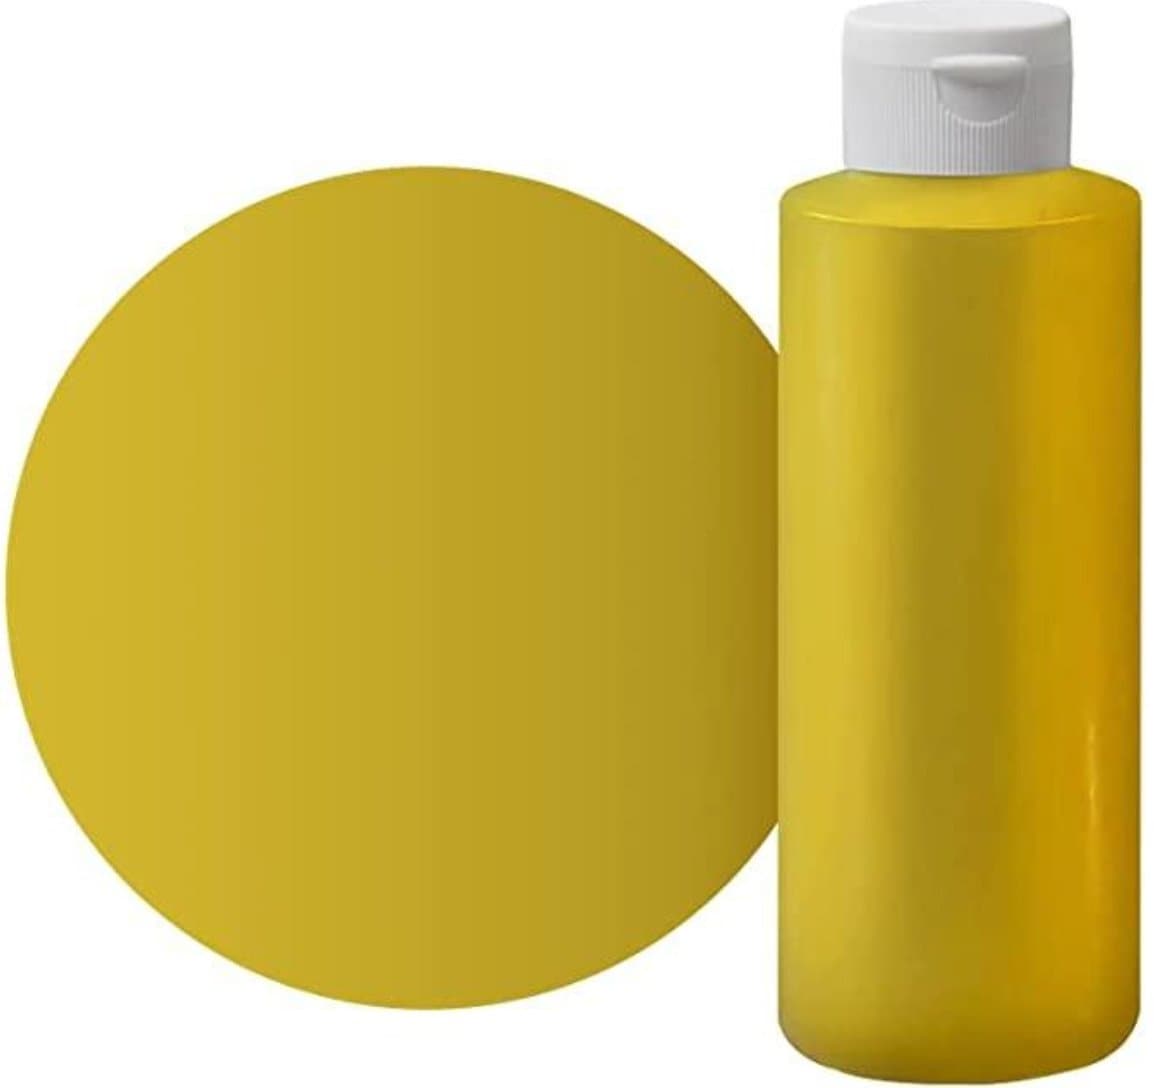 Neon Yellow Liquid Epoxy Dye  Resin countertops, Neon yellow